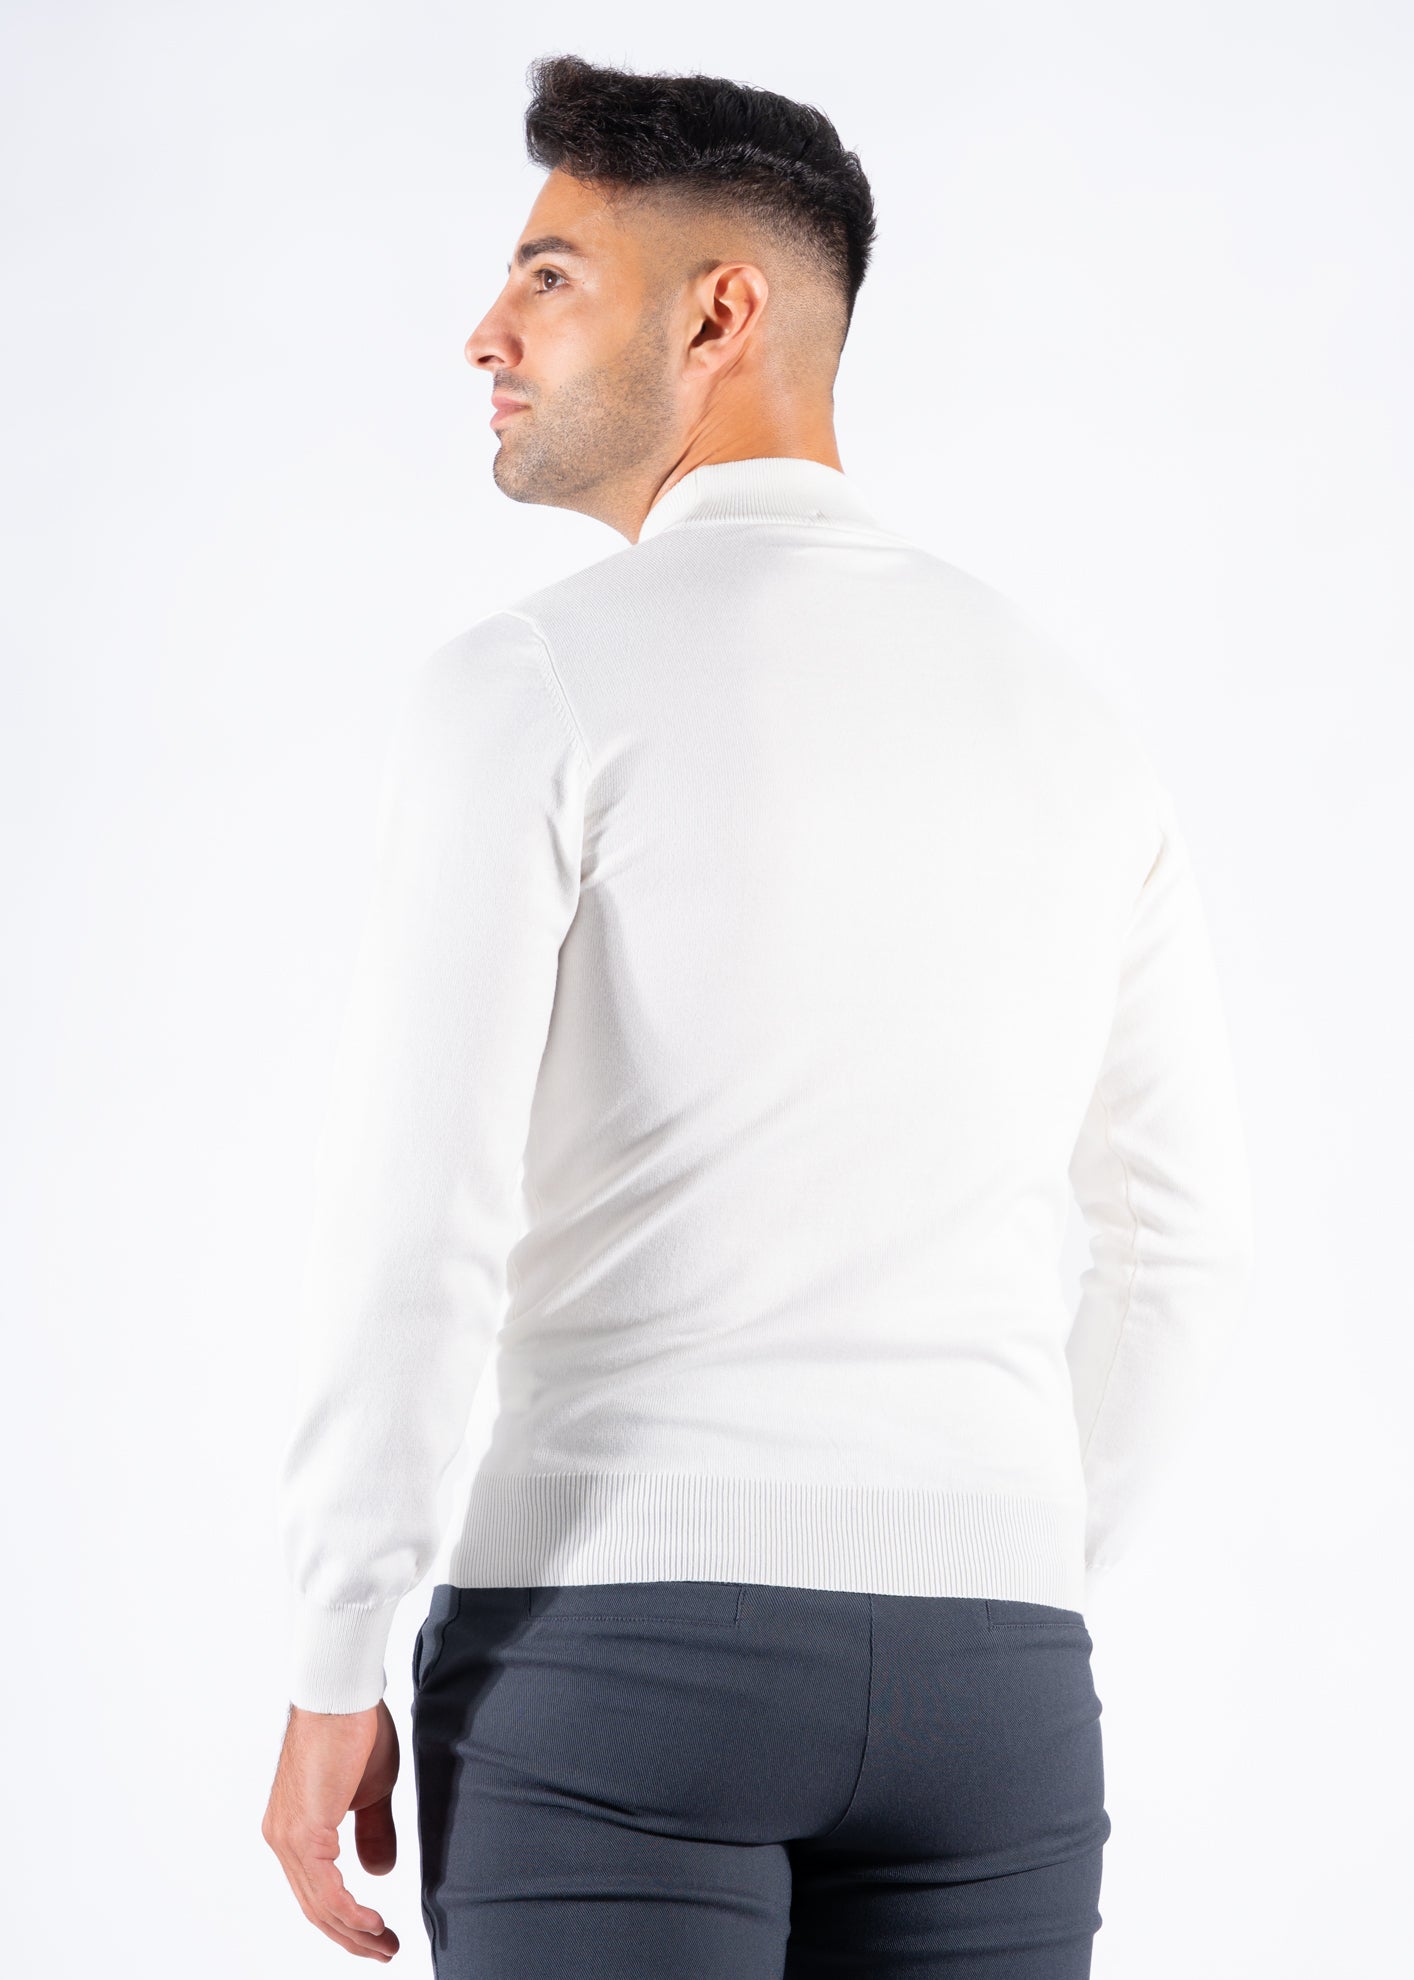 Turtleneck knitwear long sleeve white